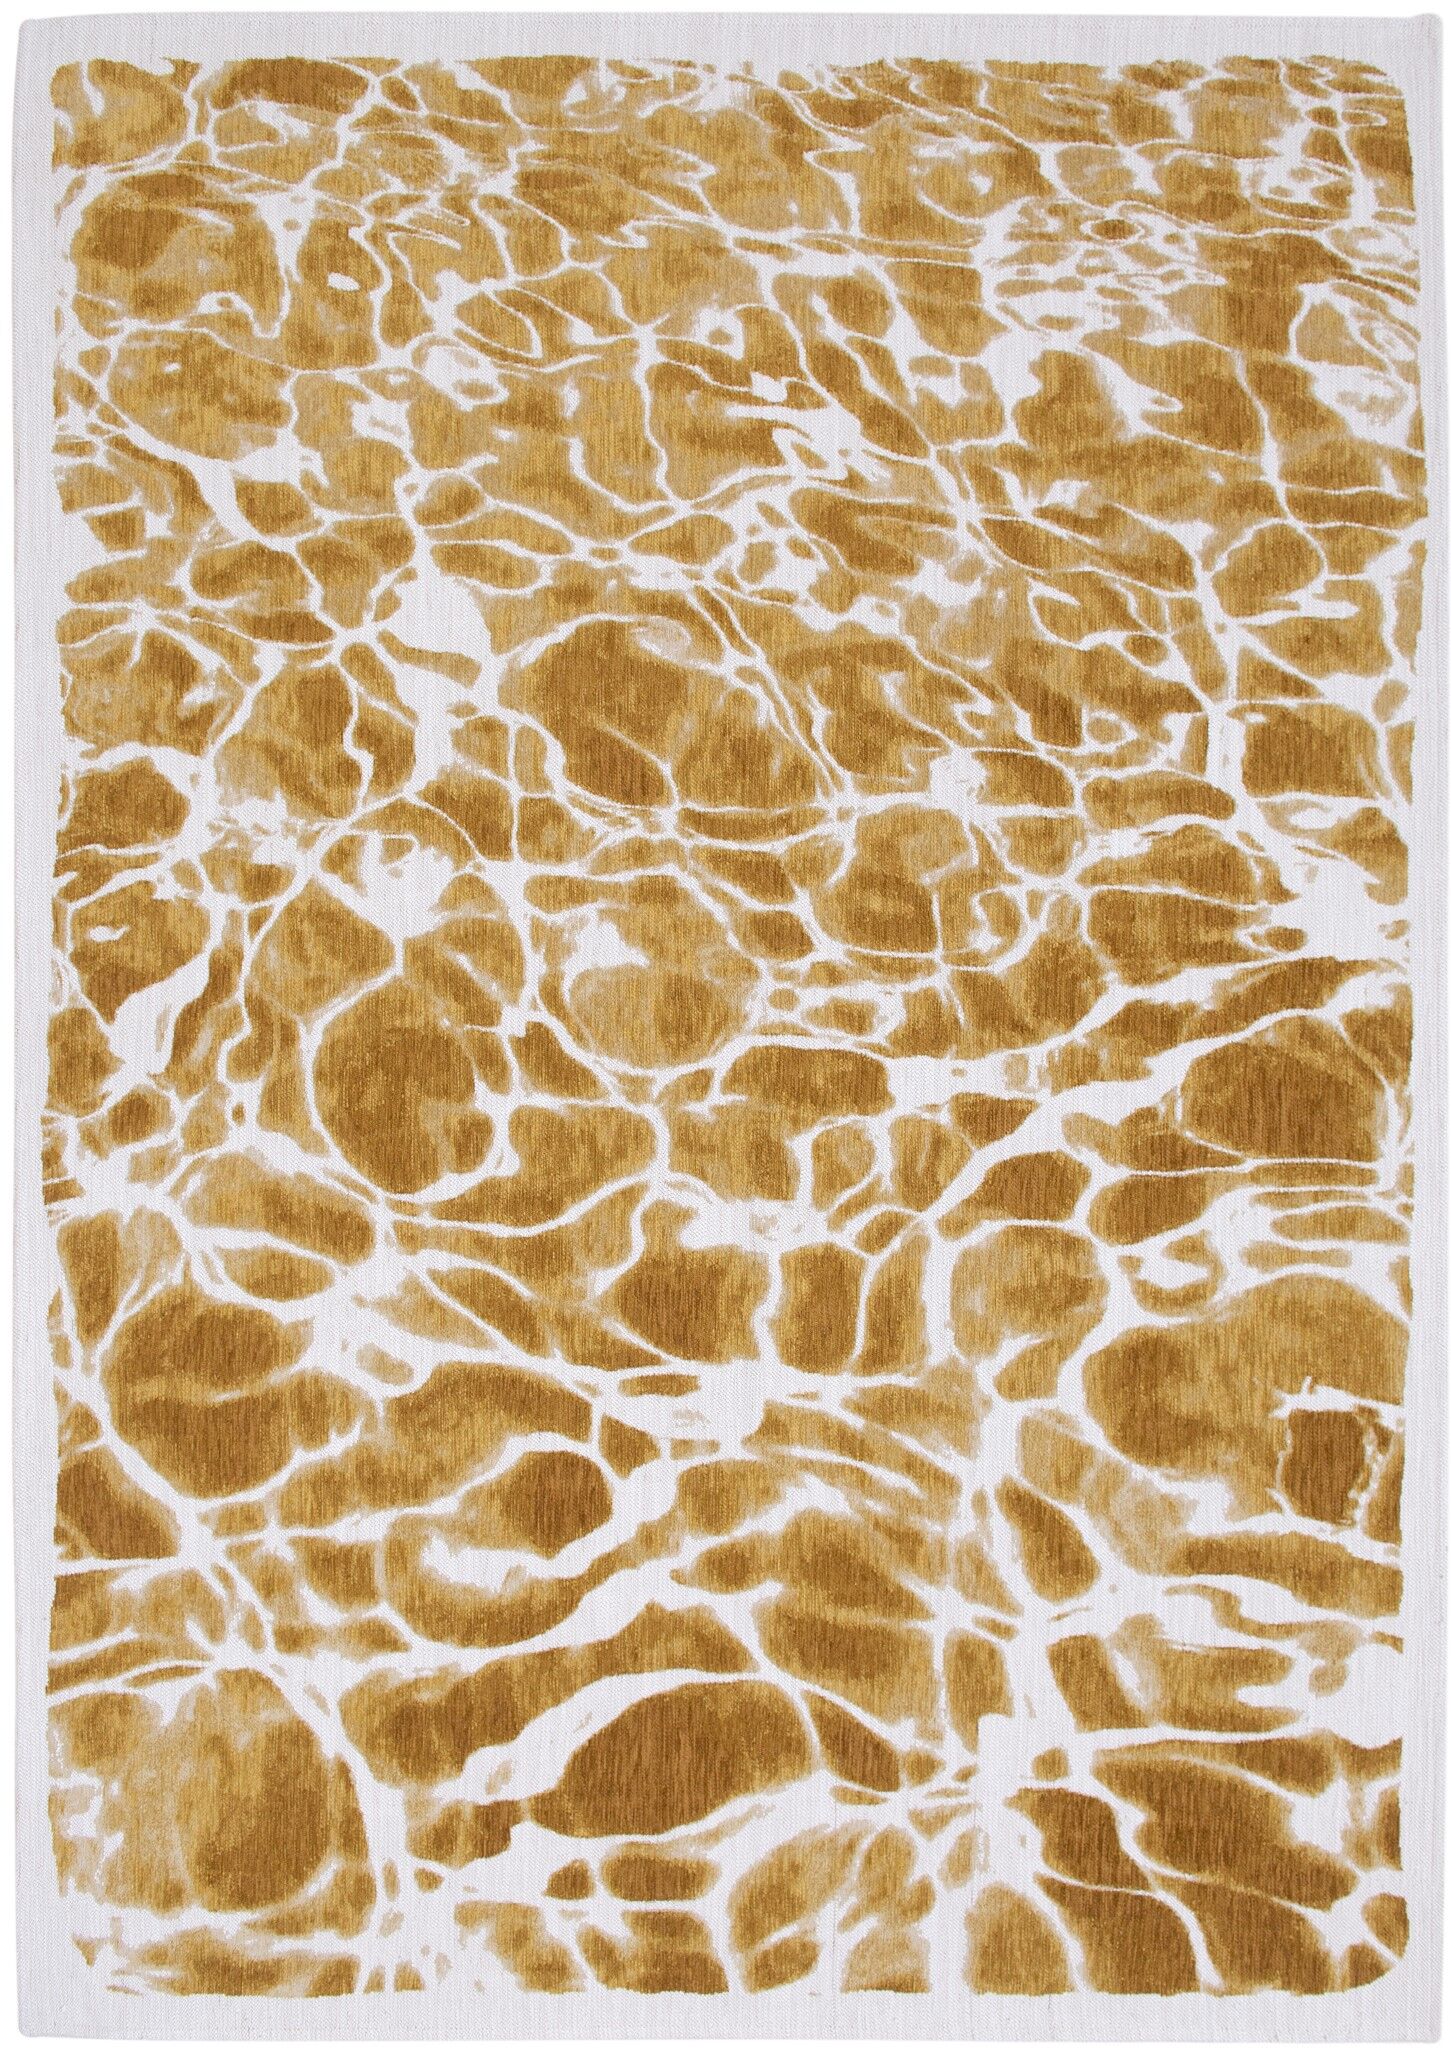 Meditation Collection Swim Saffron 9349 rug by Louis De Poortere